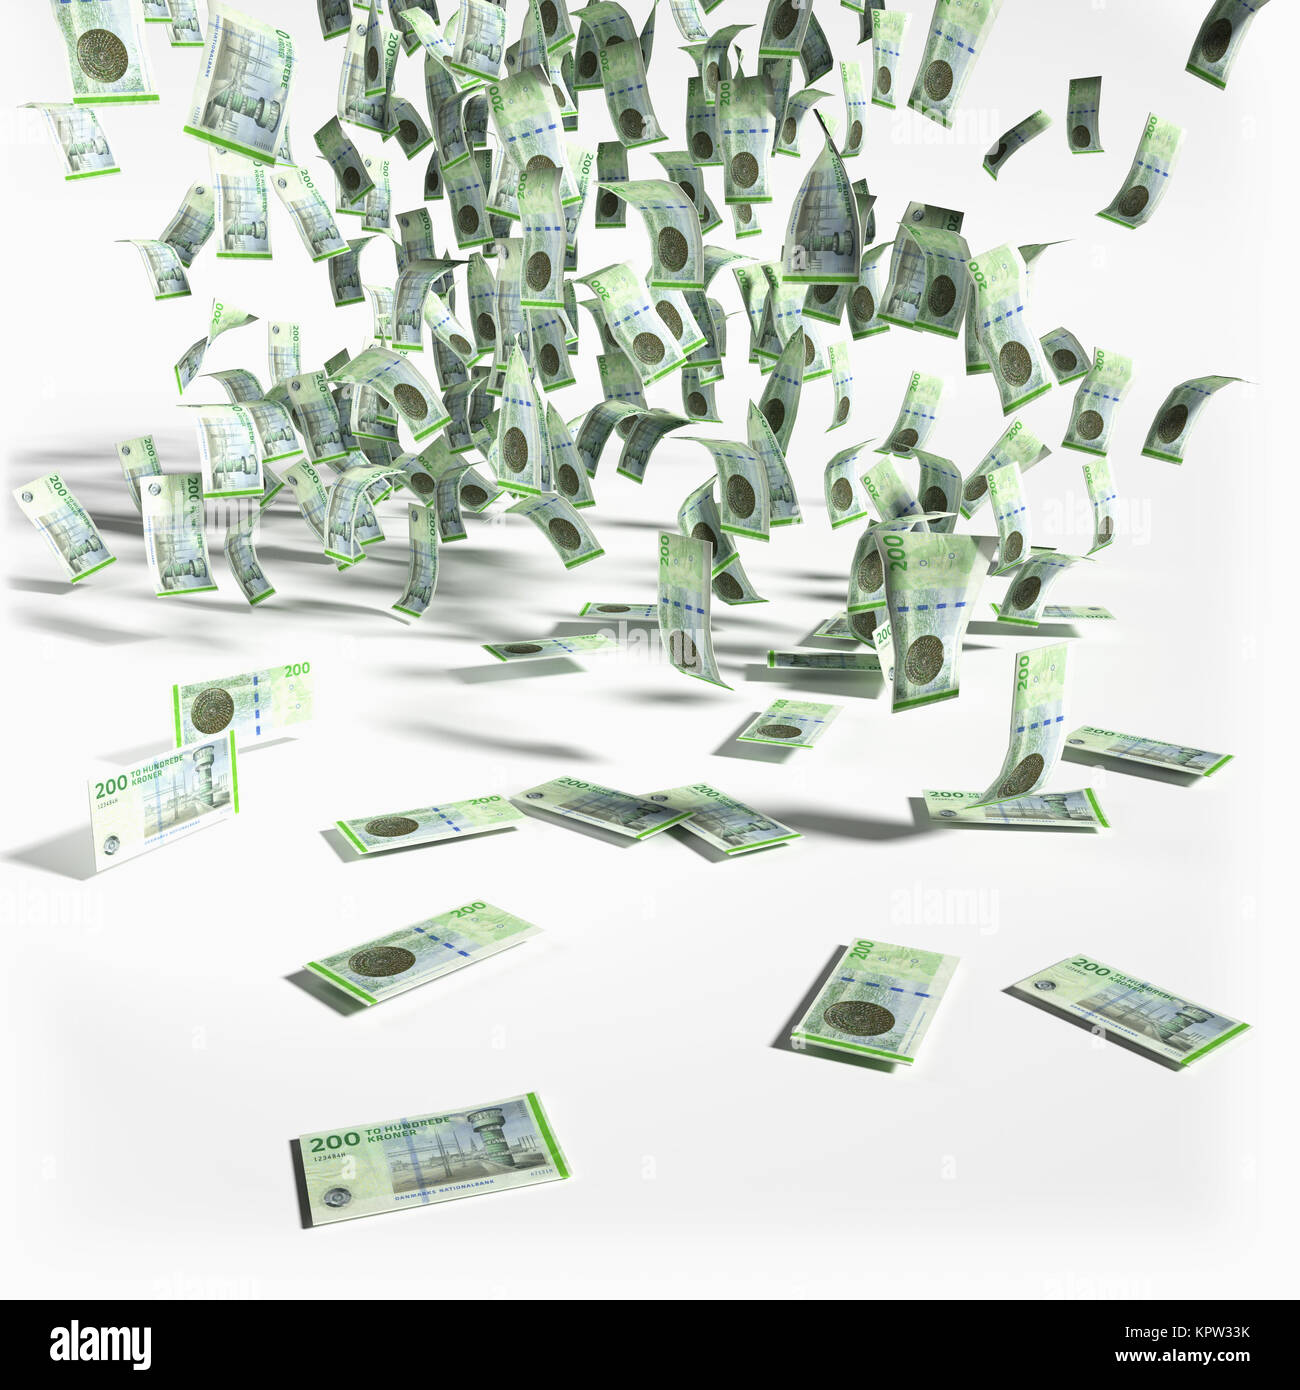 money rain from 200 danish kroner bills Stock Photo